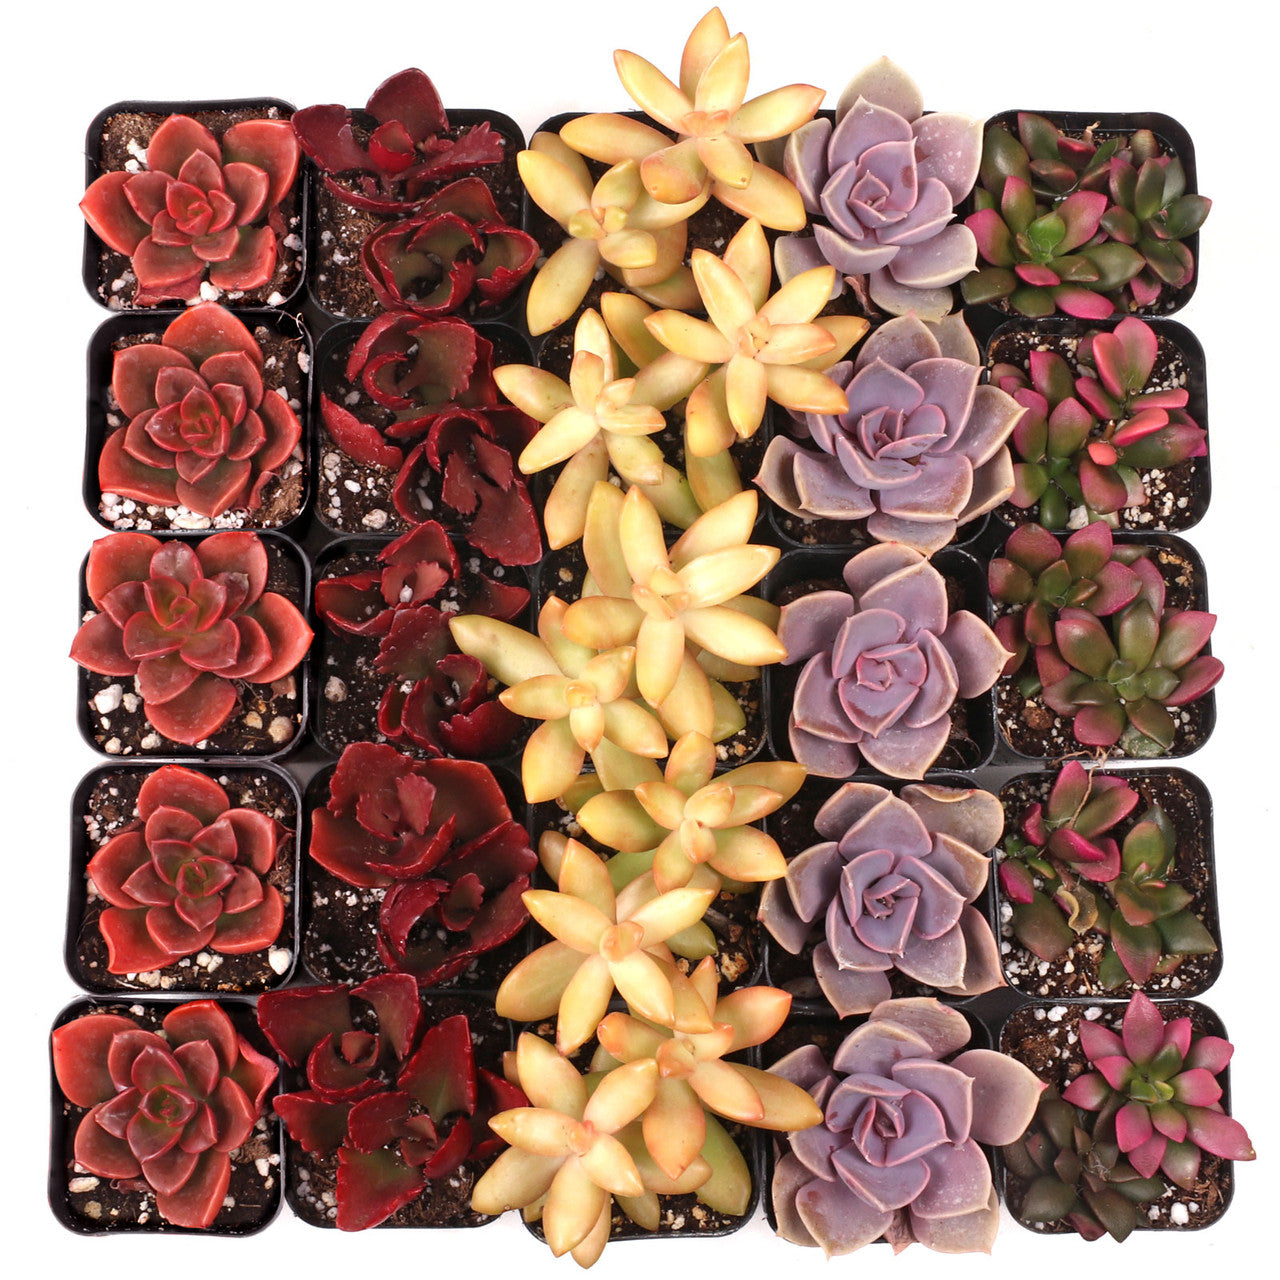 Colorful Succulents 25-Pack - 5 Varieties - 2" Pots